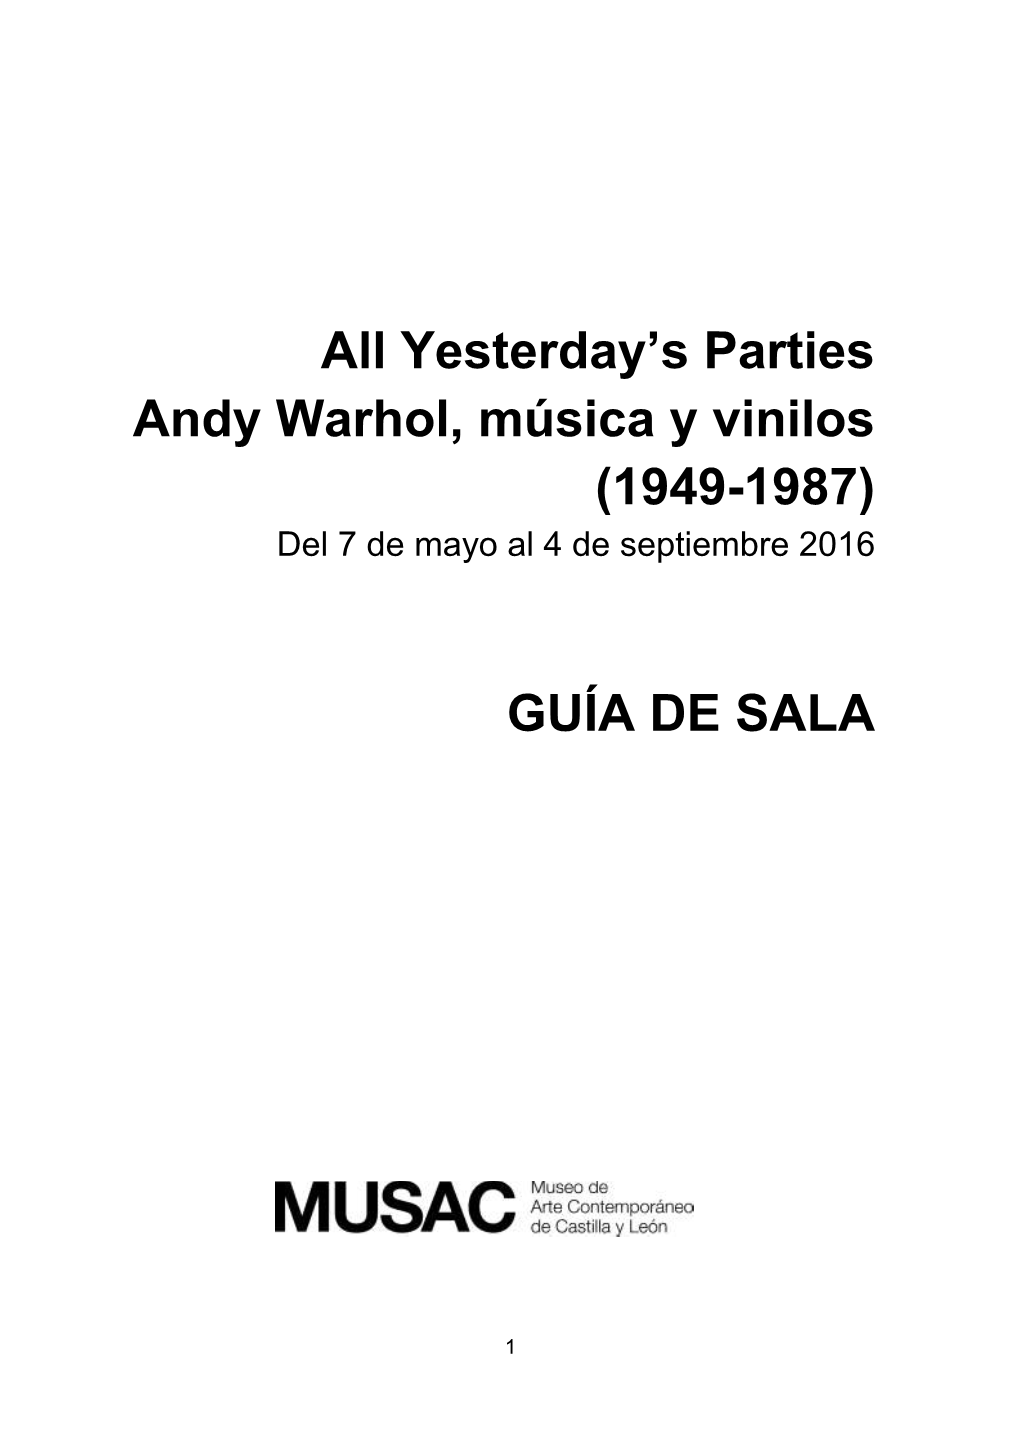 All Yesterday's Parties Andy Warhol, Música Y Vinilos (1949-1987) GUÍA